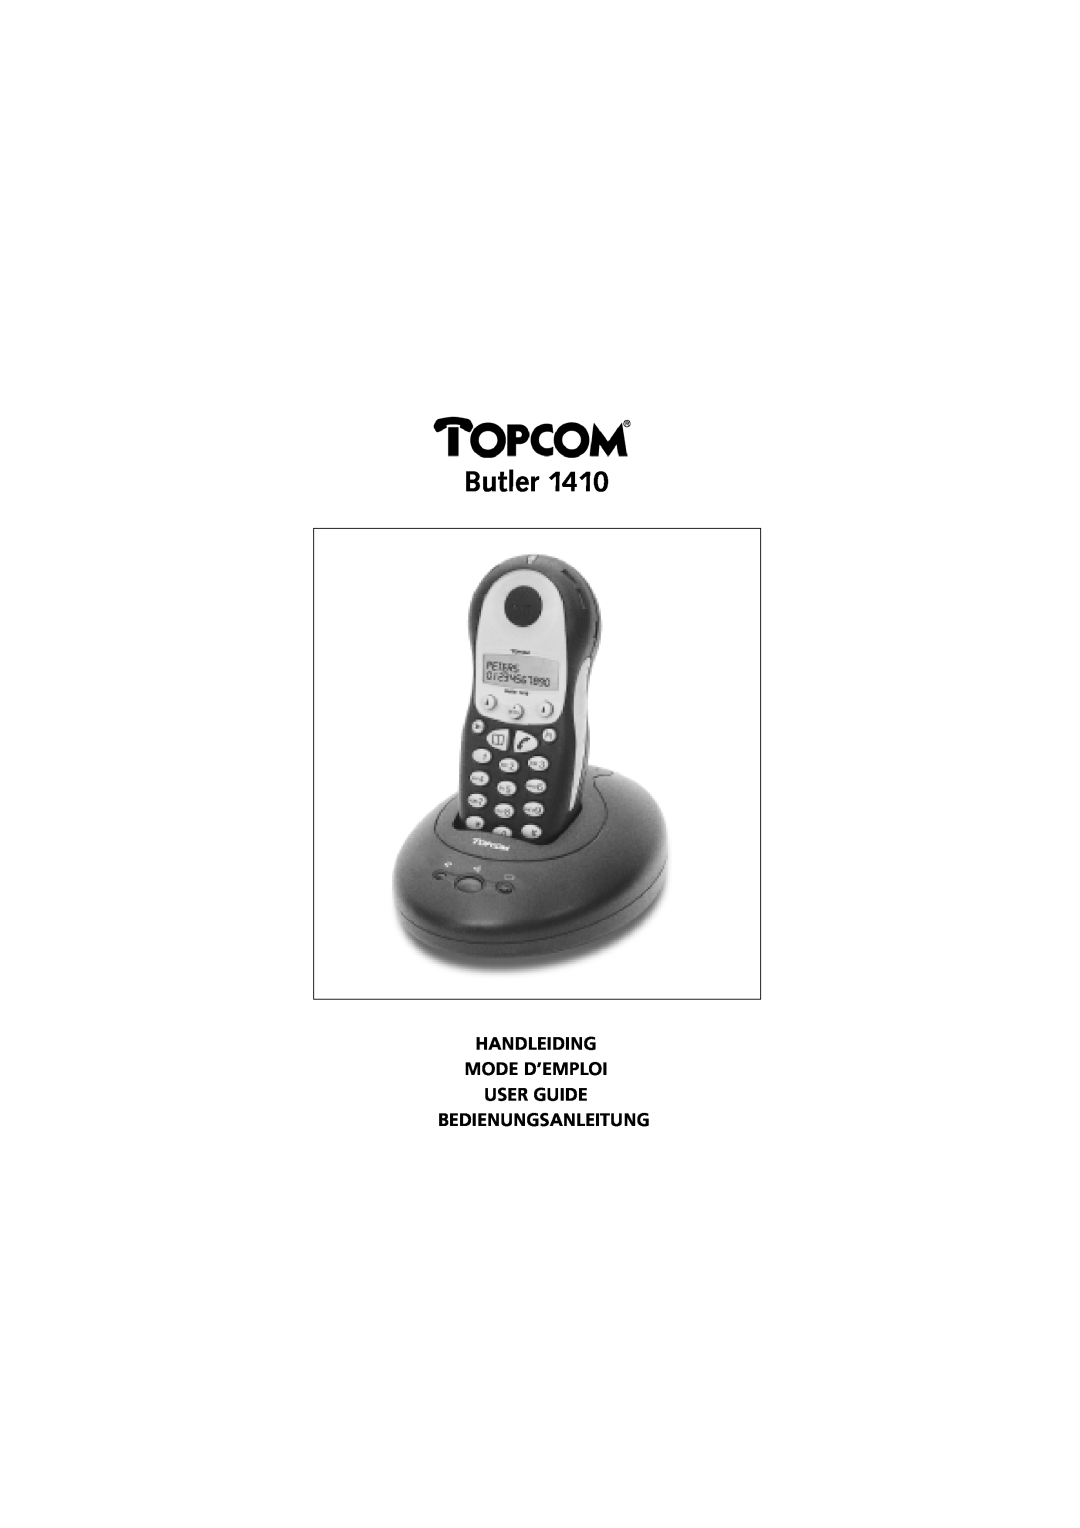 Topcom 1410 manual Butler, Handleiding Mode D’Emploi User Guide Bedienungsanleitung 